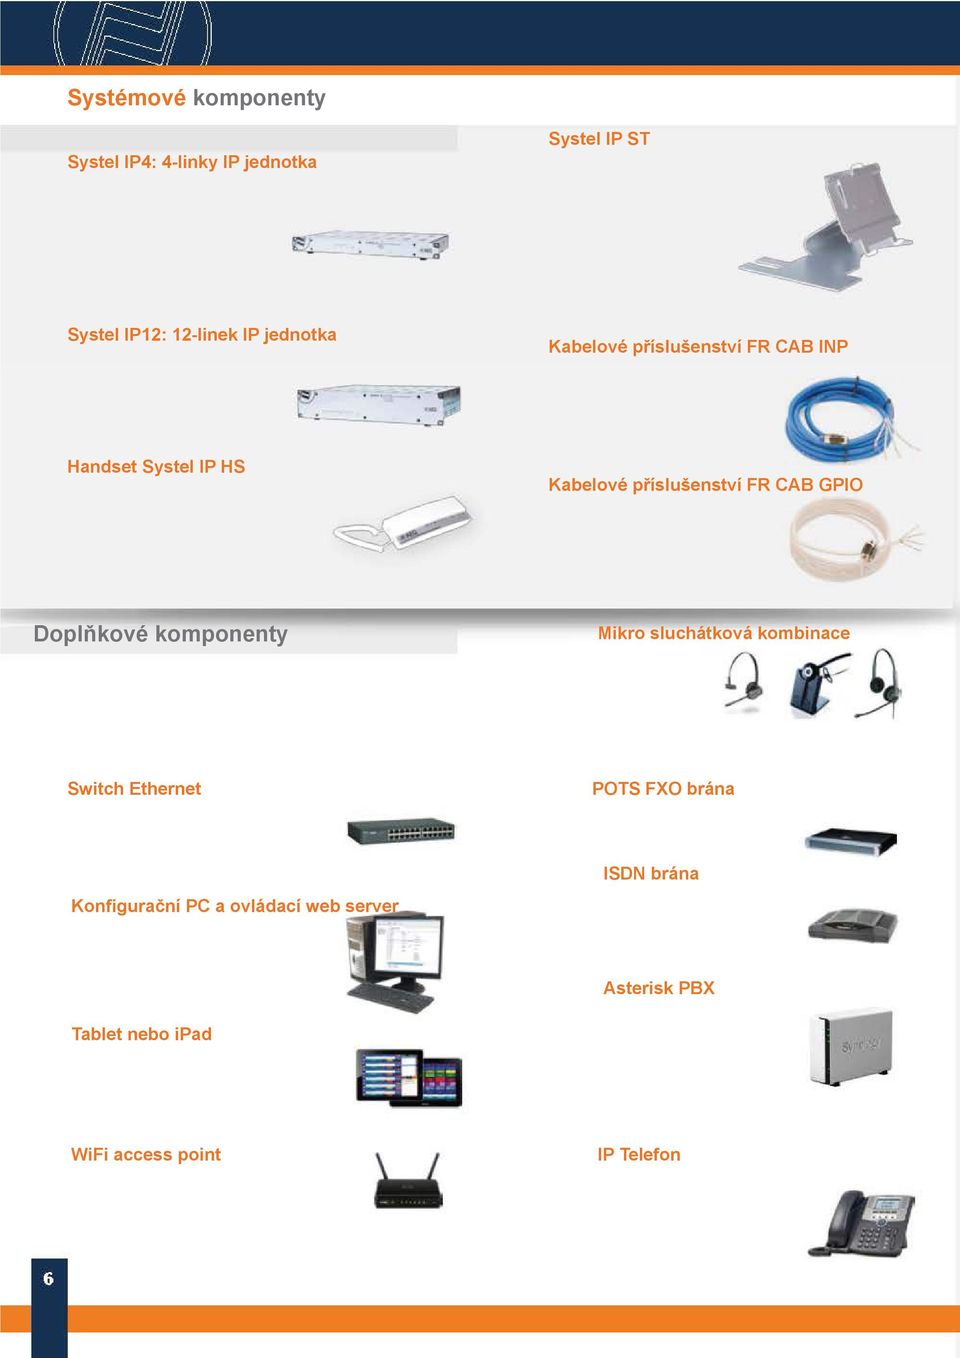 GPIO Doplňkové komponenty Mikro sluchátková kombinace Switch Ethernet POTS FXO brána ISDN